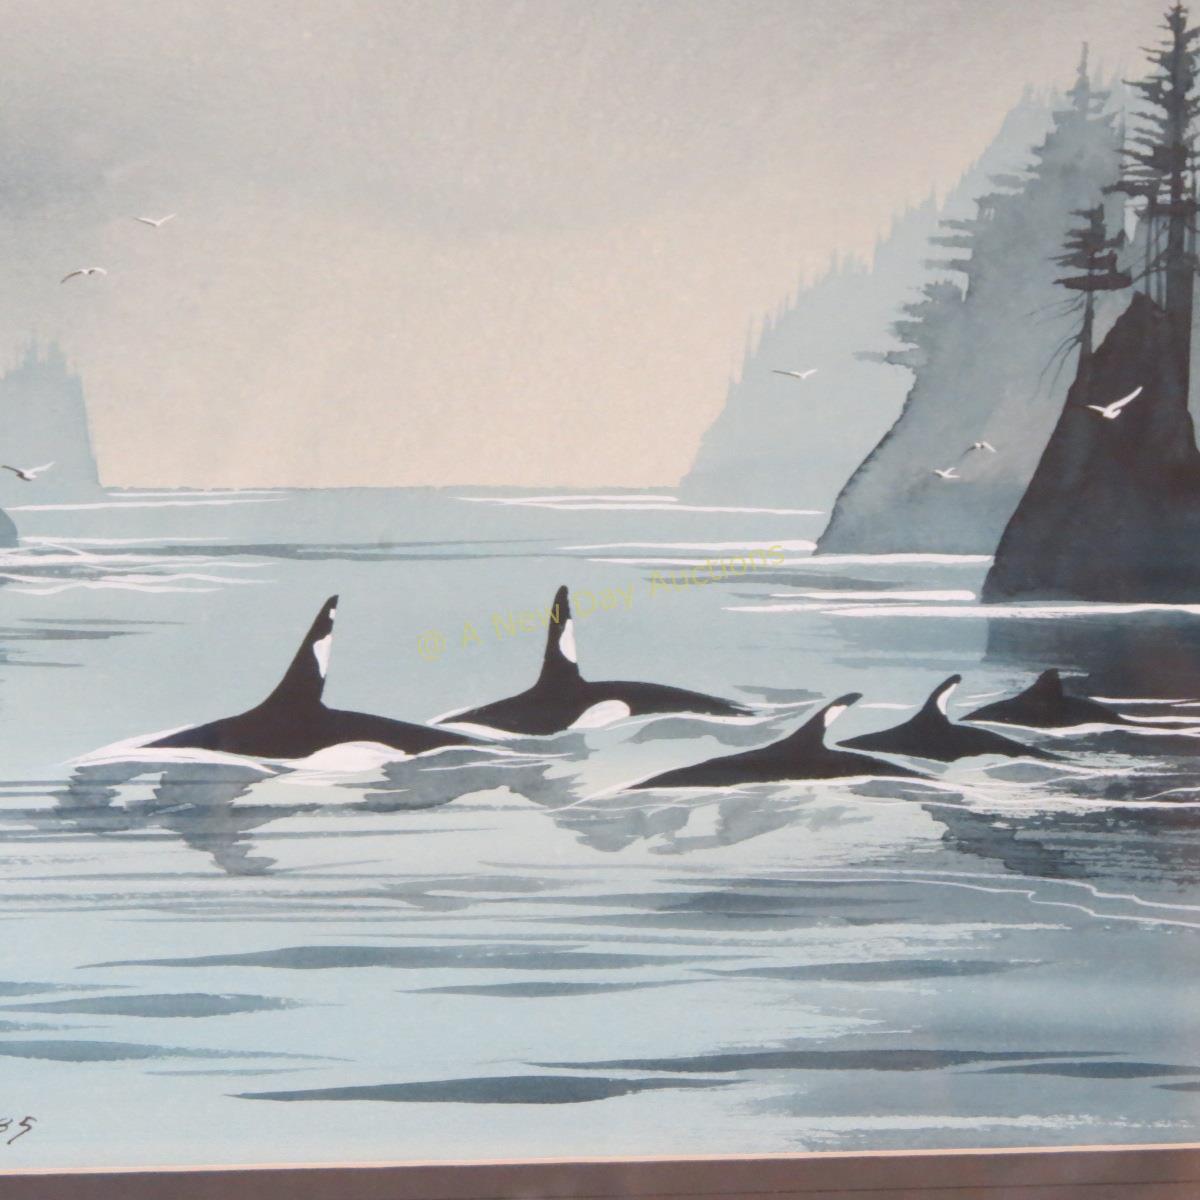 Original "Orcas" watercolor by Dan A Kleegan